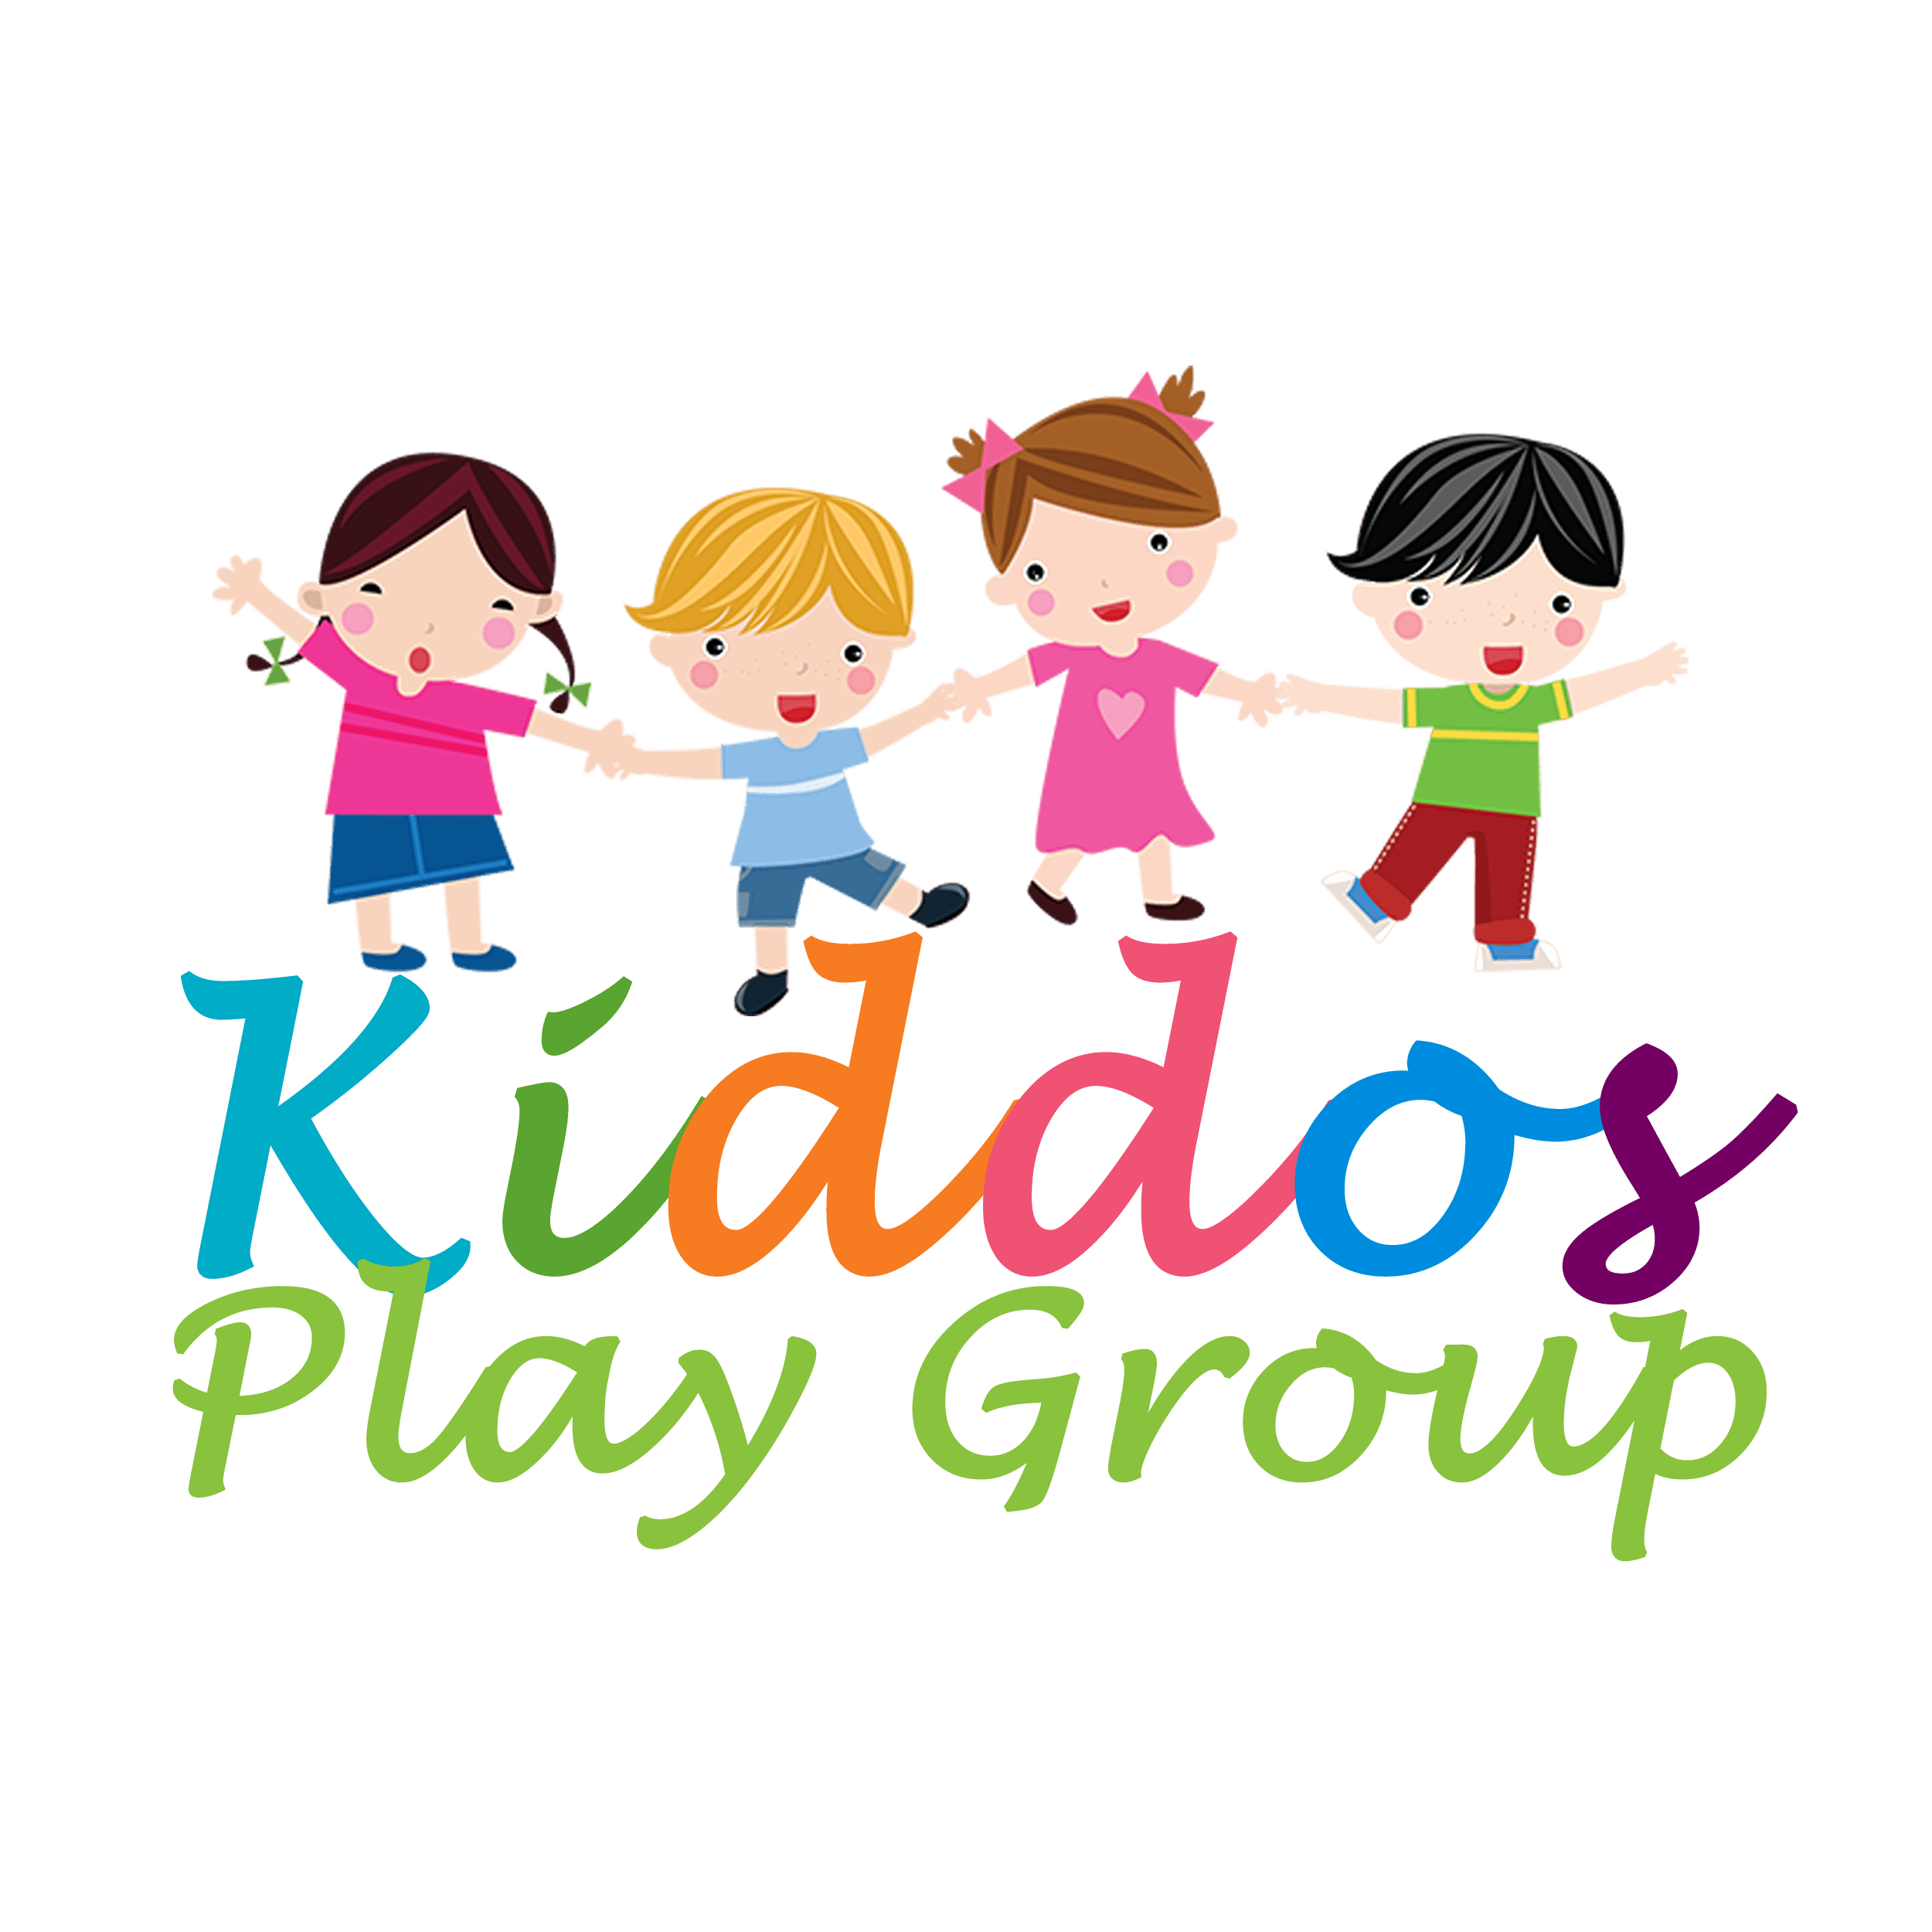 Kiddos Play Group